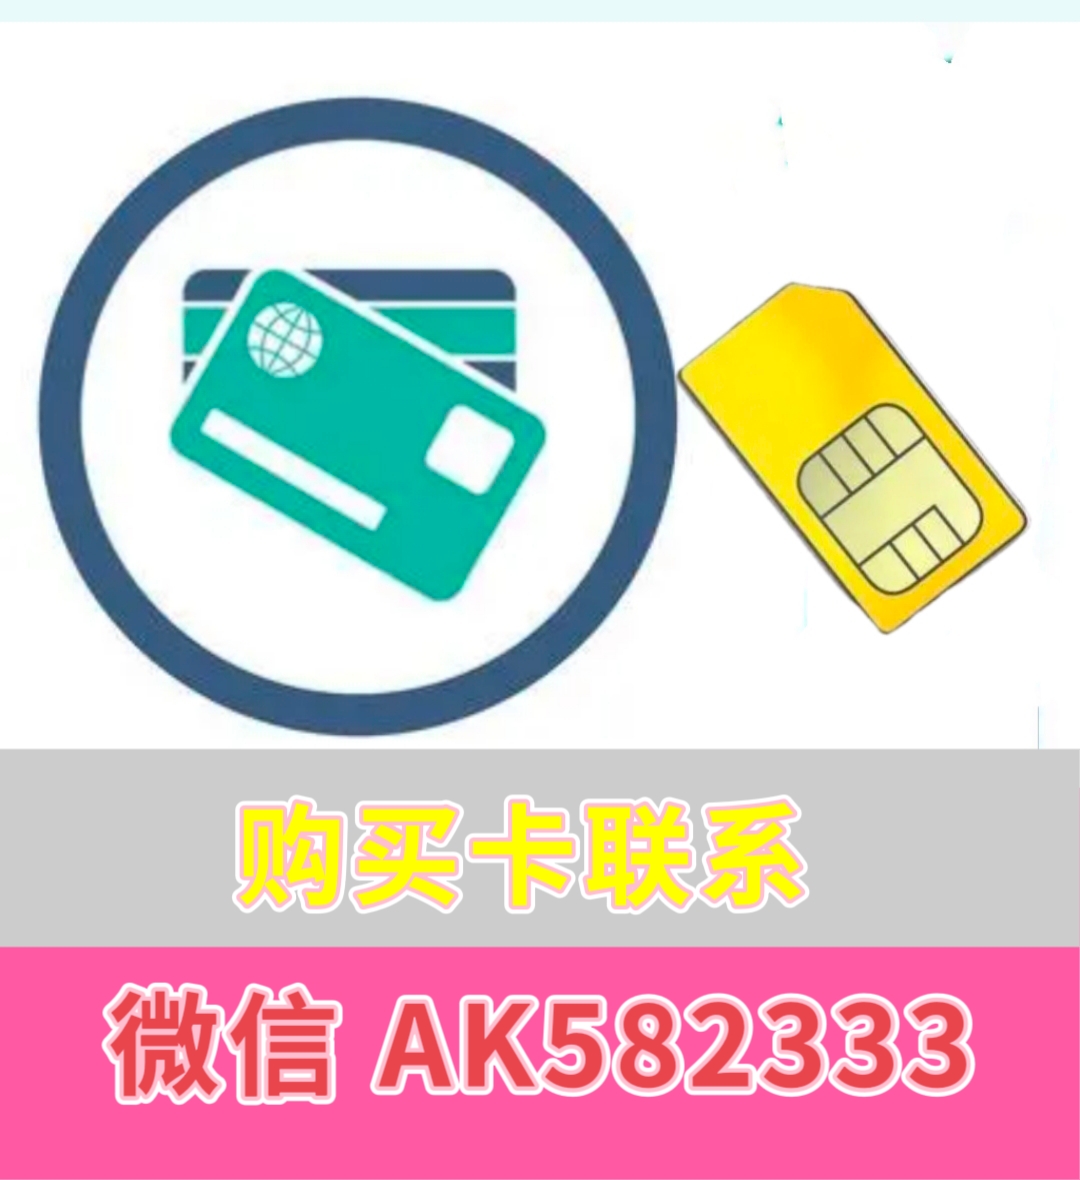 出售已实名认证电信手机卡，不用提供身份证办理联通卡